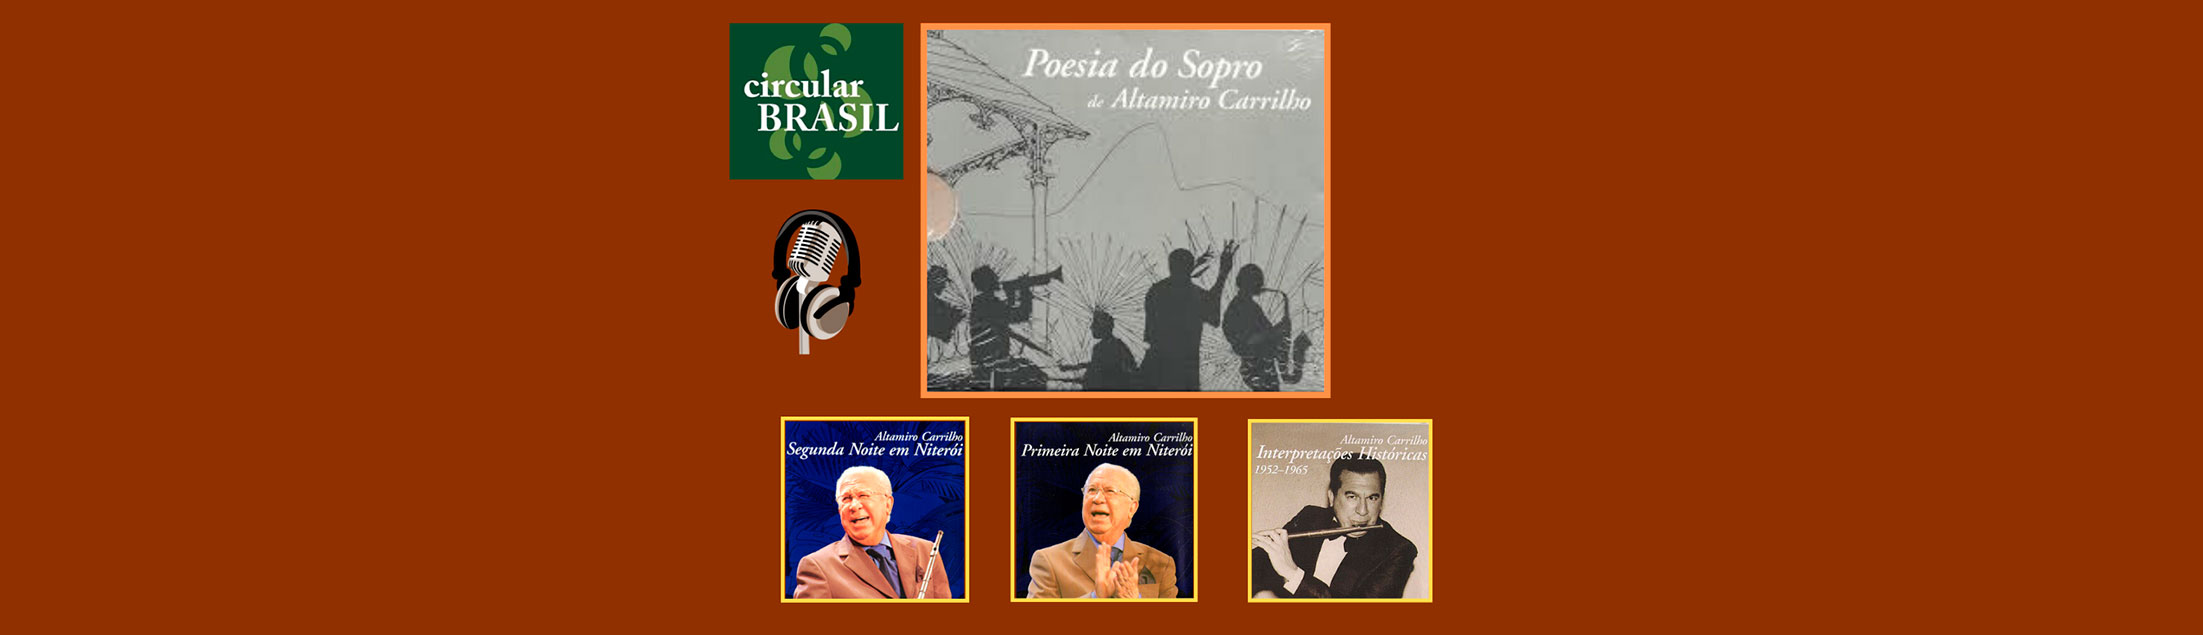 Circular Brasil faz homenagem à 'Poesia do Sopro' de Altamiro Carrilho!